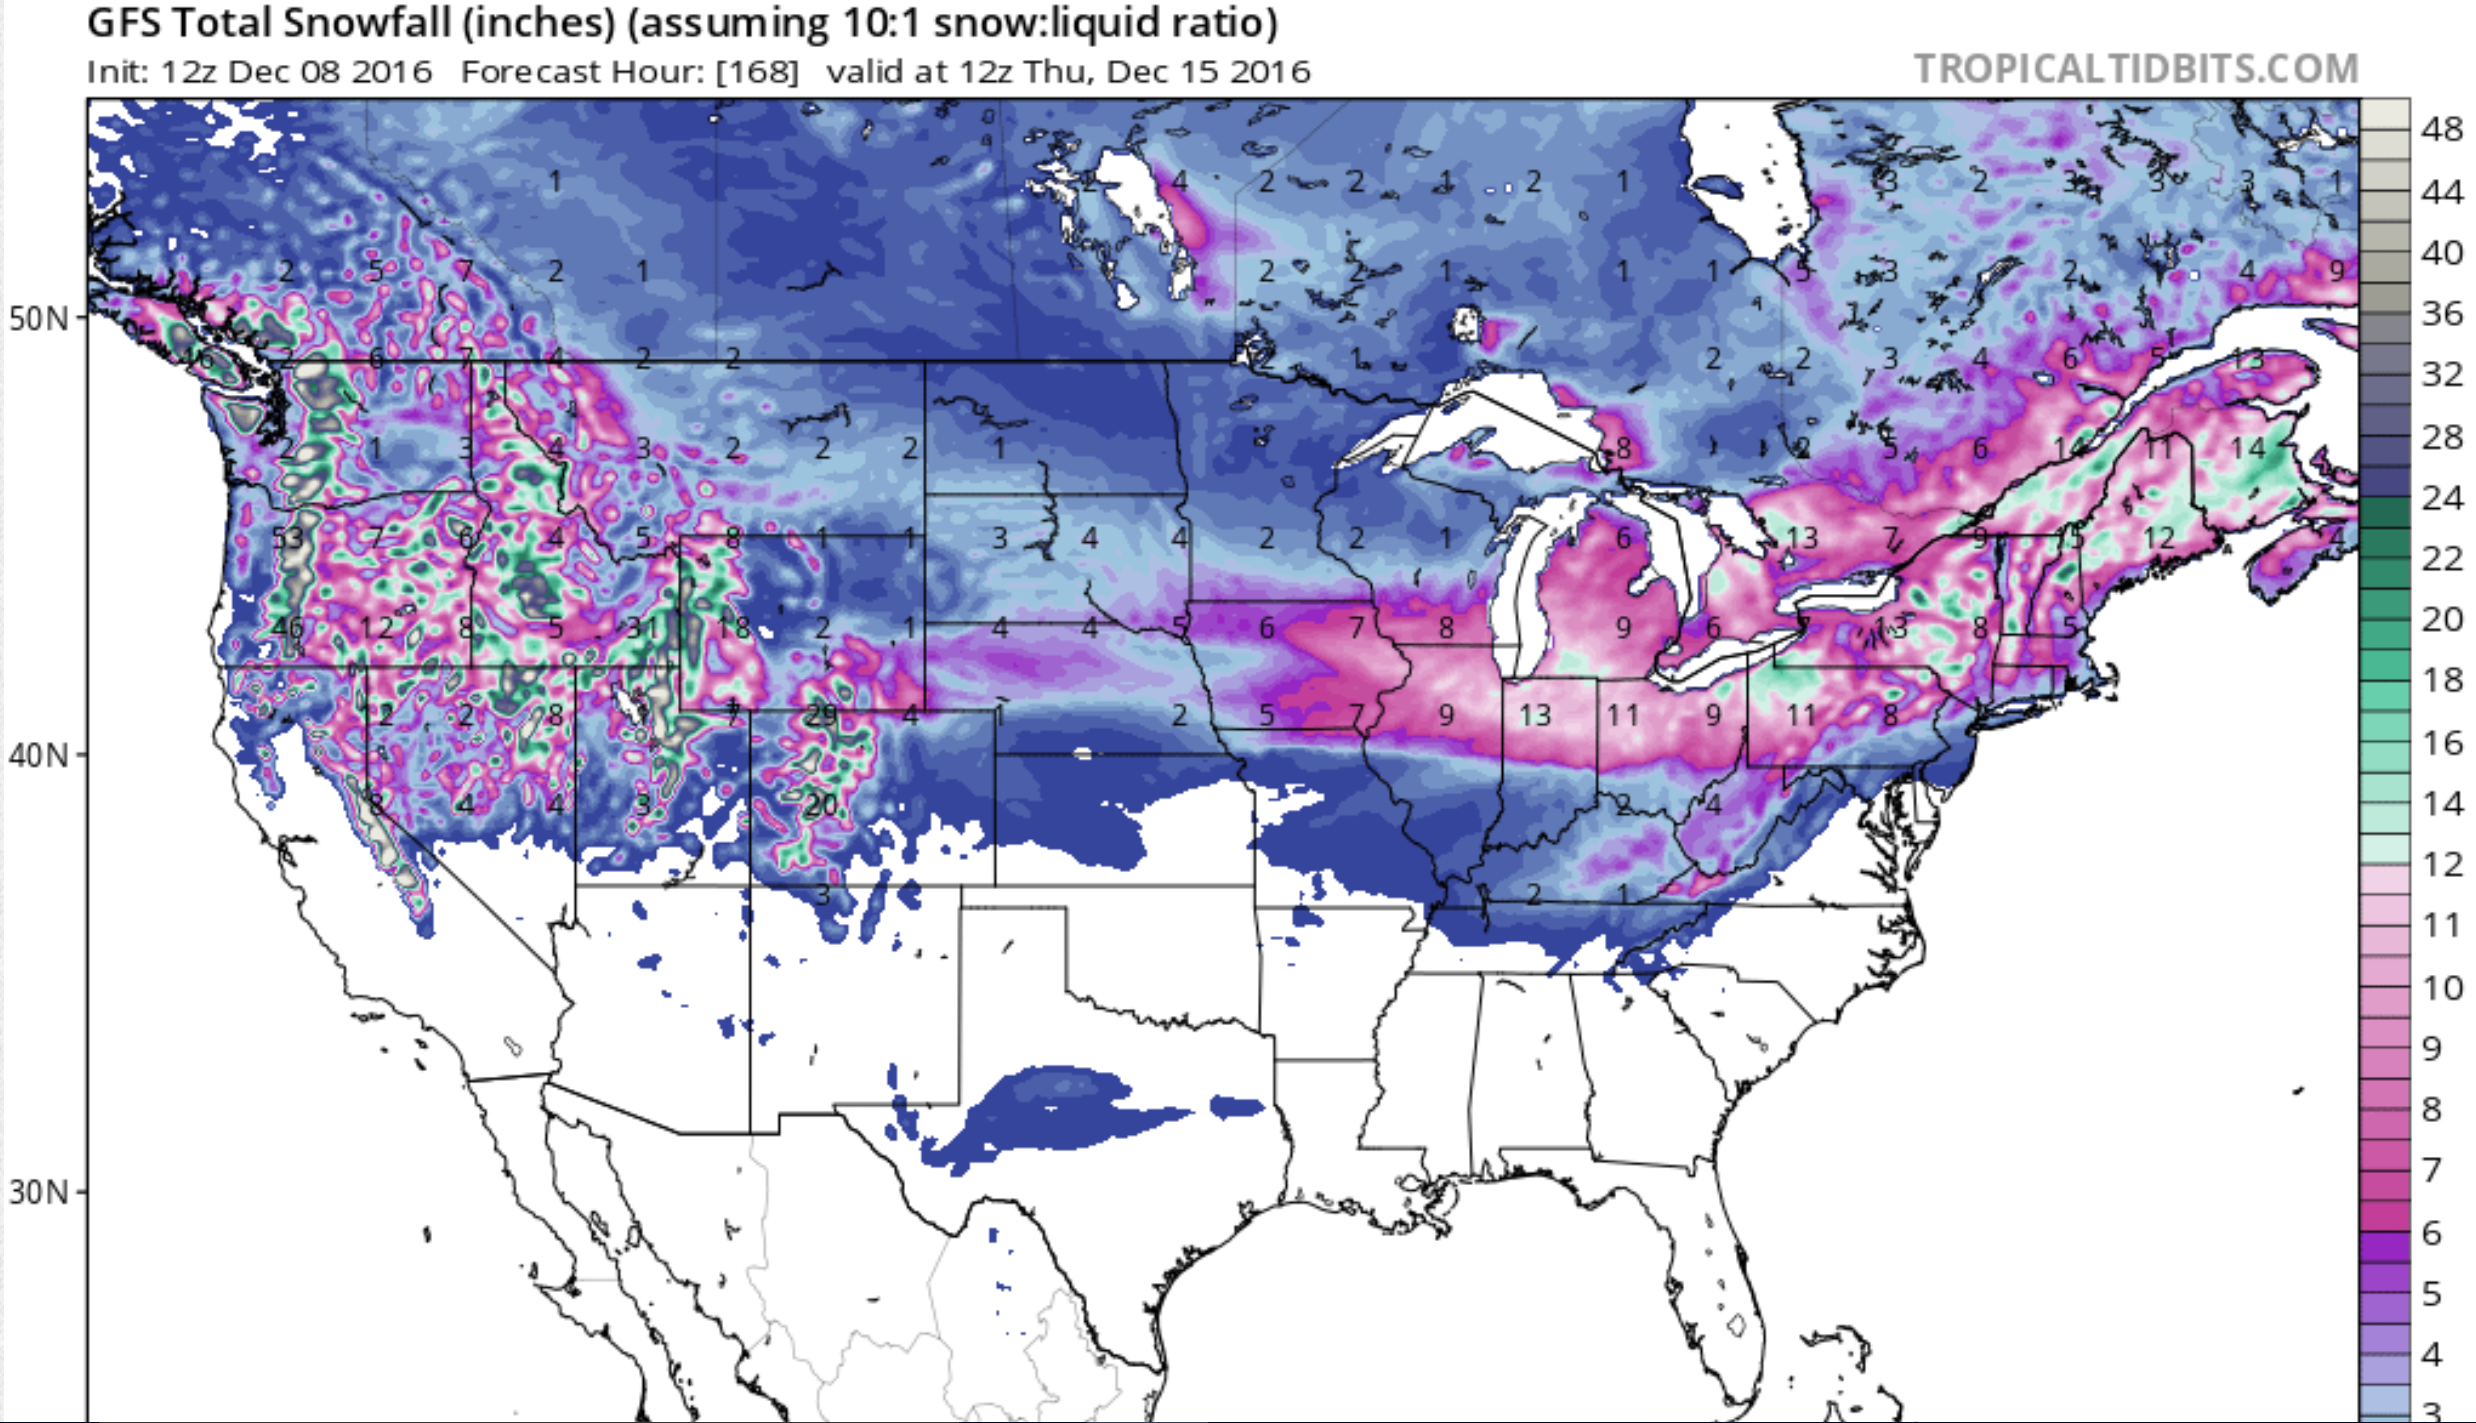 GEM model showing big snow forecast across the west next 7 days. image: tropicaltidbits.com